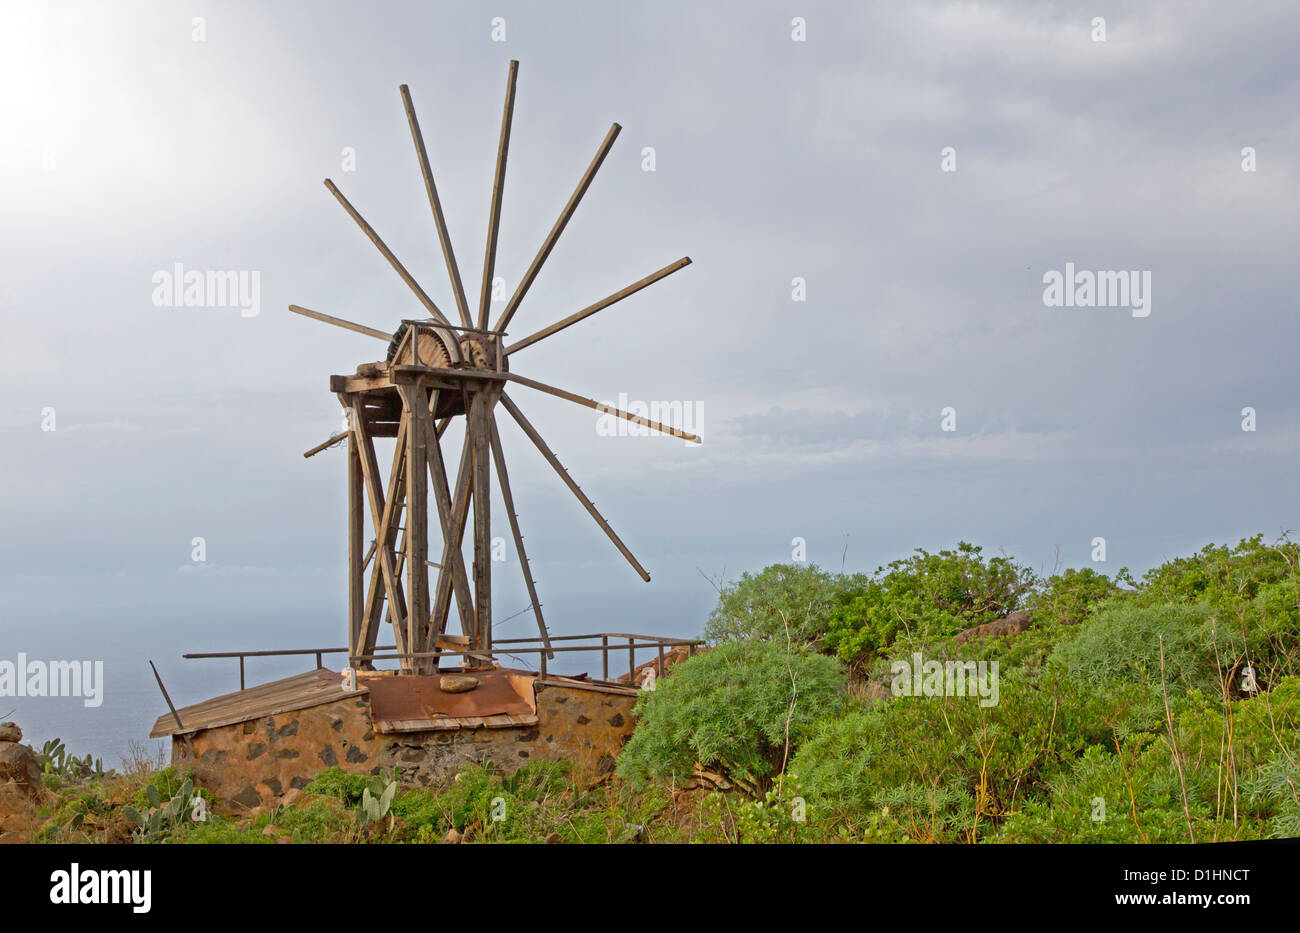 Ancien moulin à vent, La Palma, Canary Islands, Spain Banque D'Images